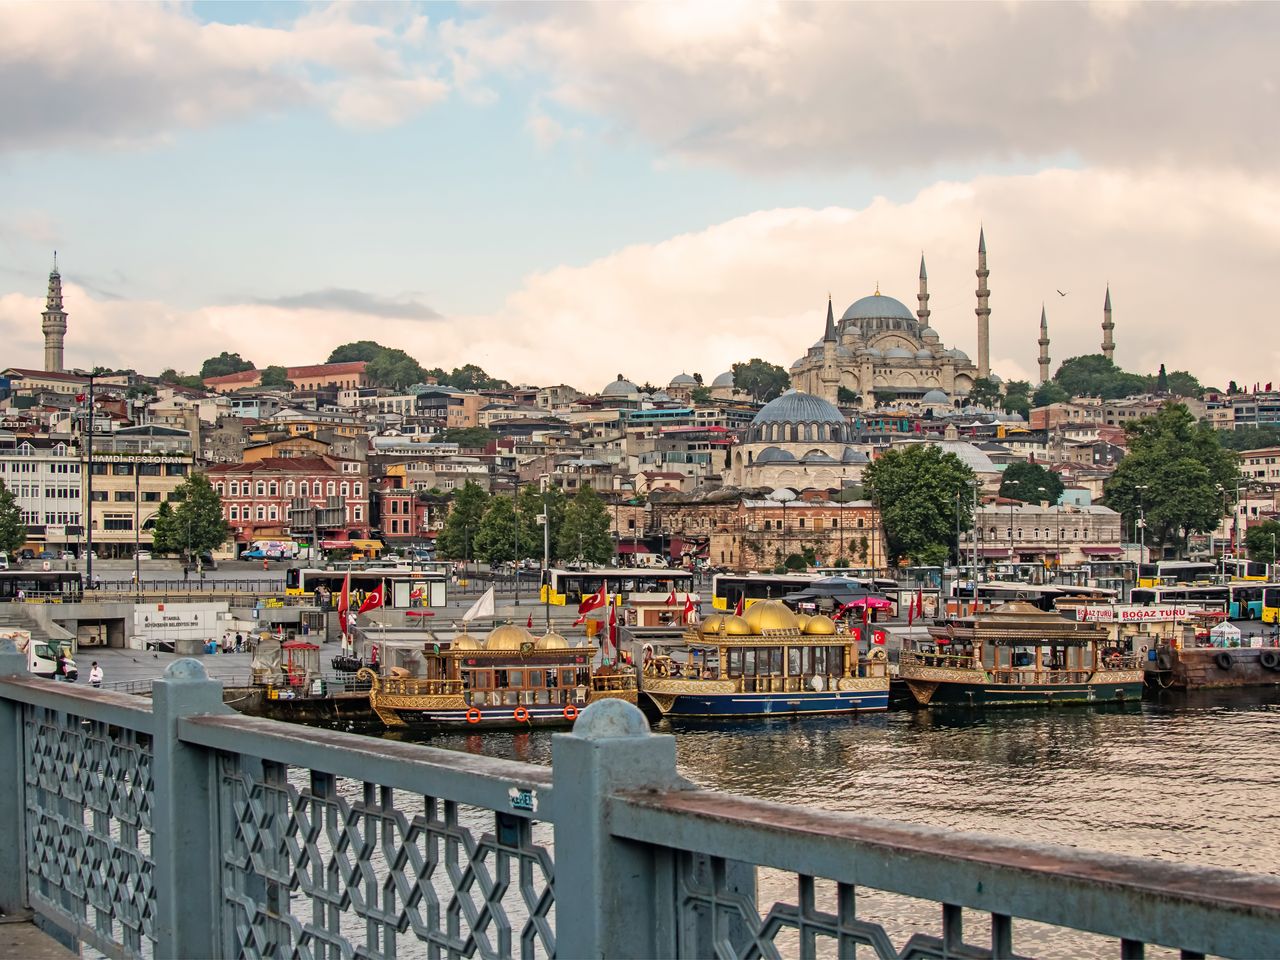 Стамбул многоликий: султаны, Босфор и сериалы | Цена 178€, отзывы, описание экскурсии